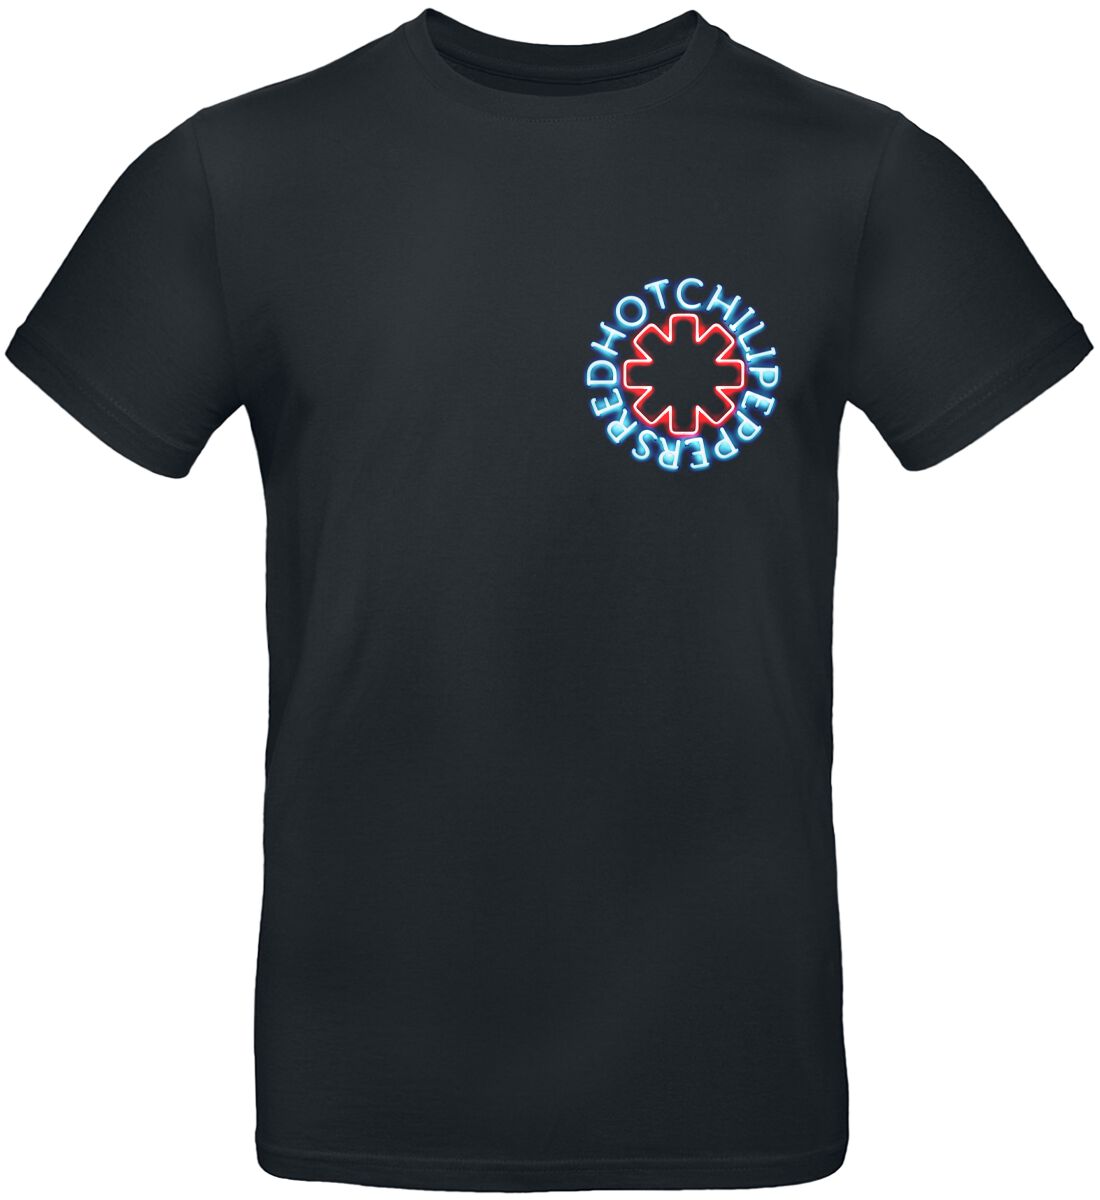 Red Hot Chili Peppers T-Shirt - Neon Logo - XXL bis 3XL - für Männer - Größe 3XL - schwarz  - Lizenziertes Merchandise!